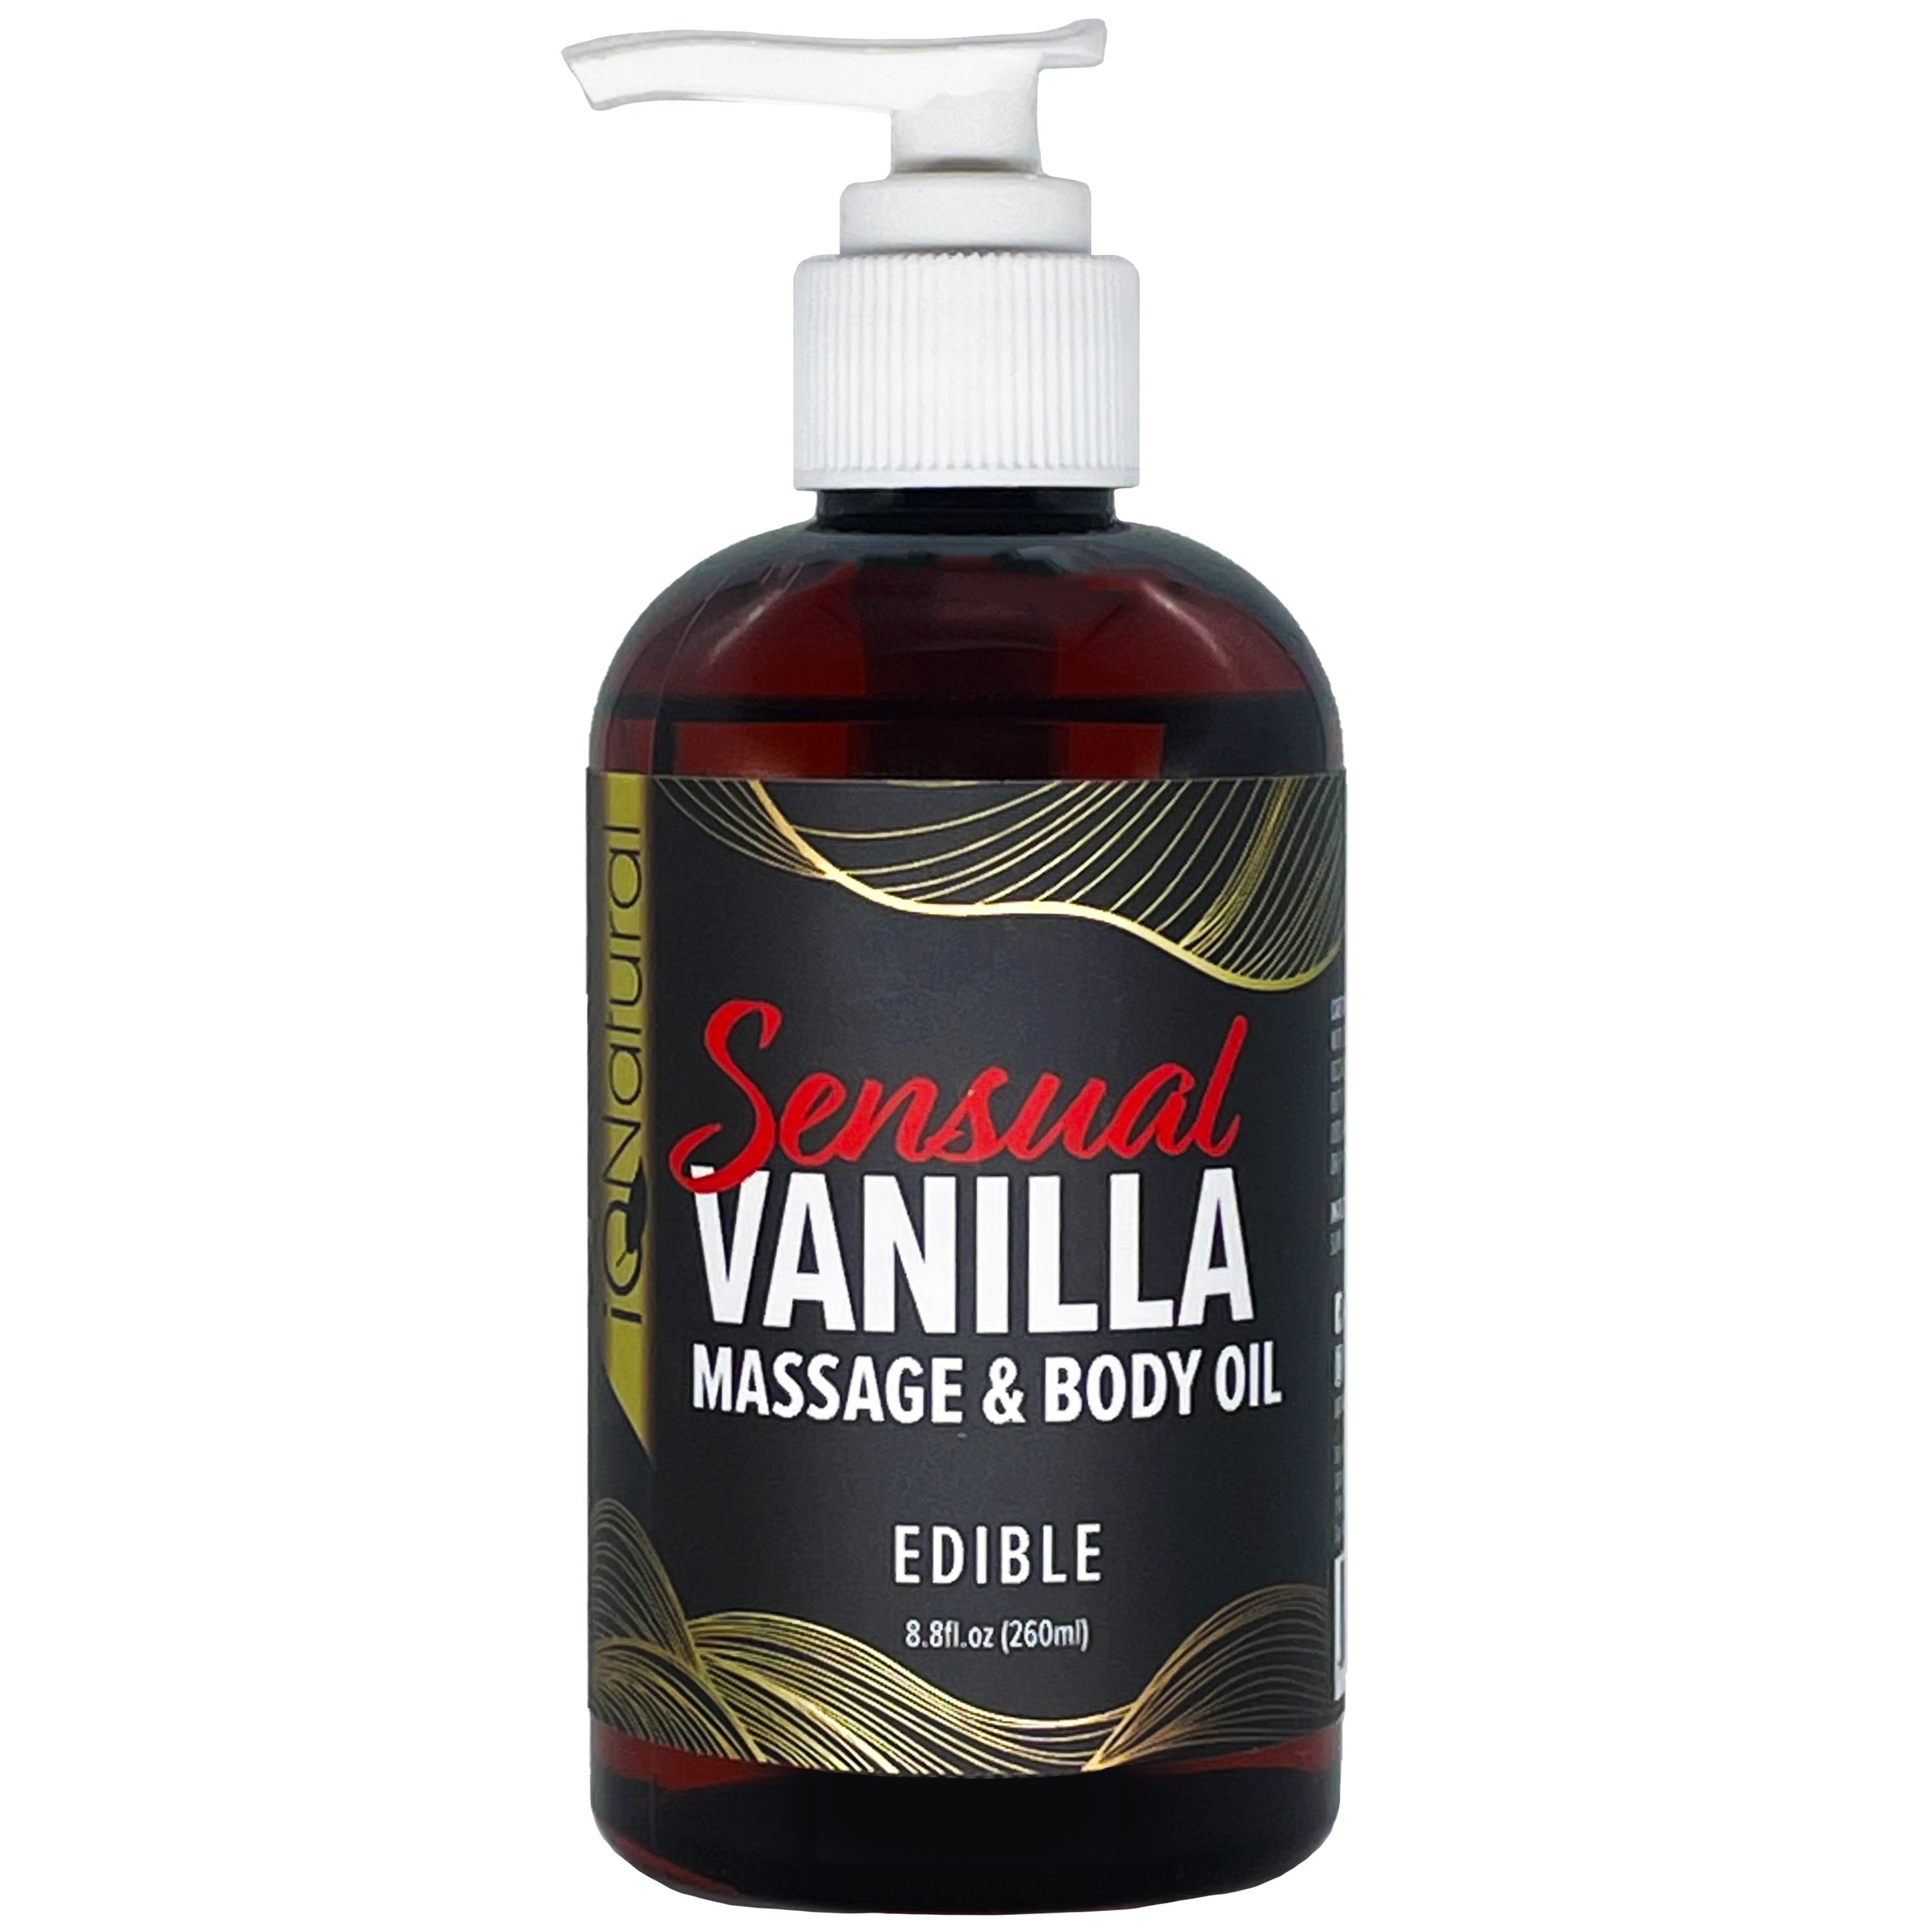 iQ Natural Massage Oil and Body Oil Sensual Vanilla Edible for Intimate Massage Therapy 8.8 fl oz